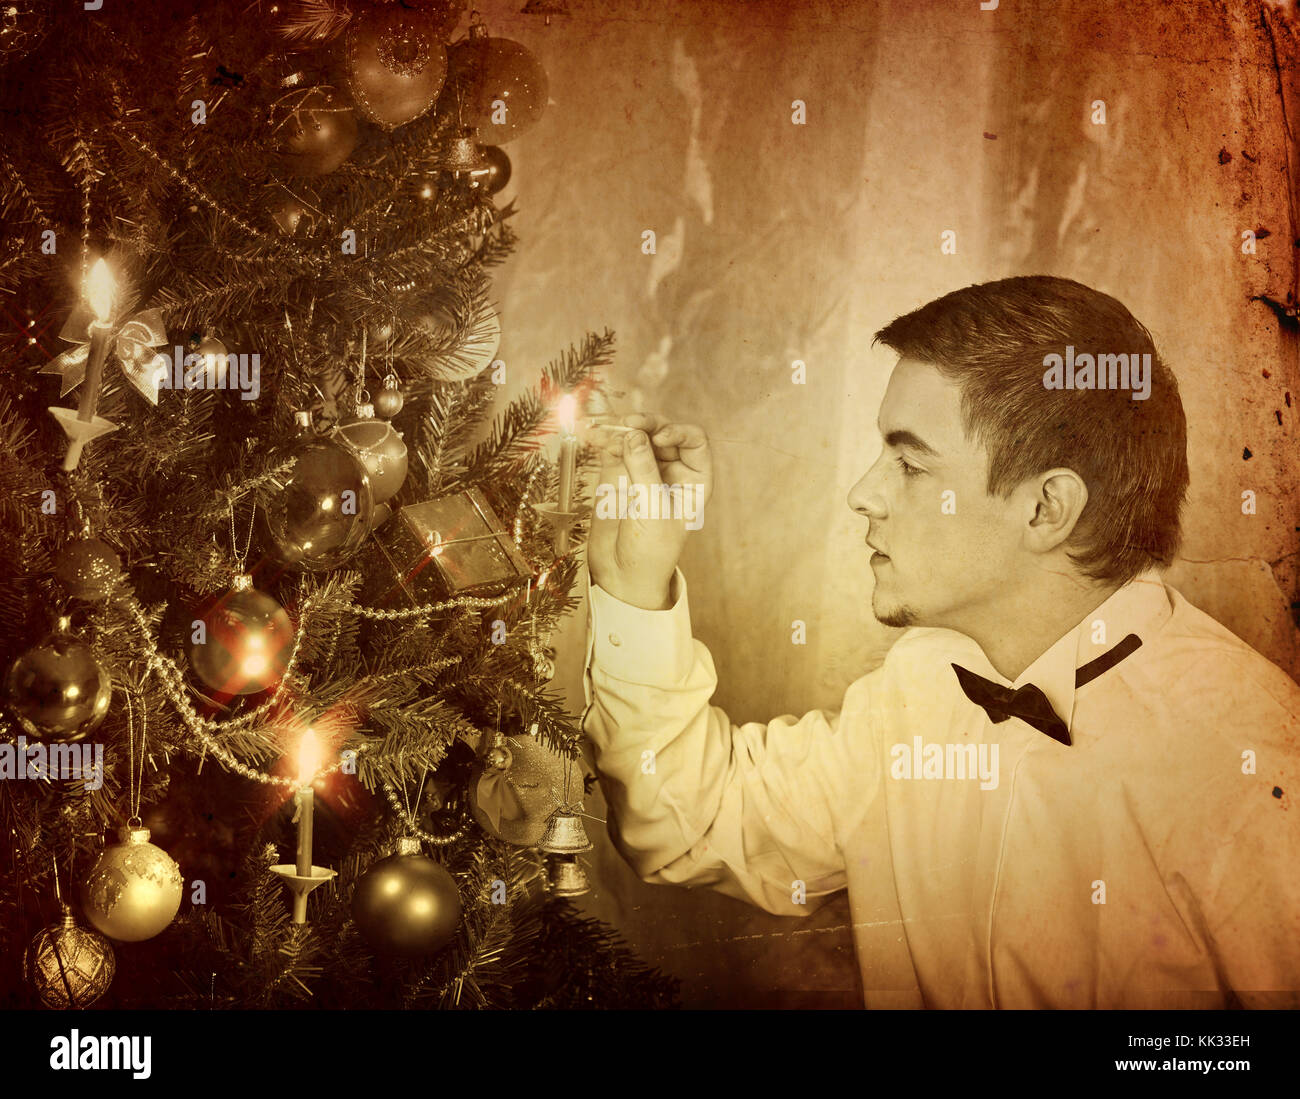 Der Mensch allein, Weihnachtsbaum. Erwartung von Urlaub am Vorabend der Xmas Party zu Hause alleine. schwarz und weiß xmas vintage Bild. Stockfoto